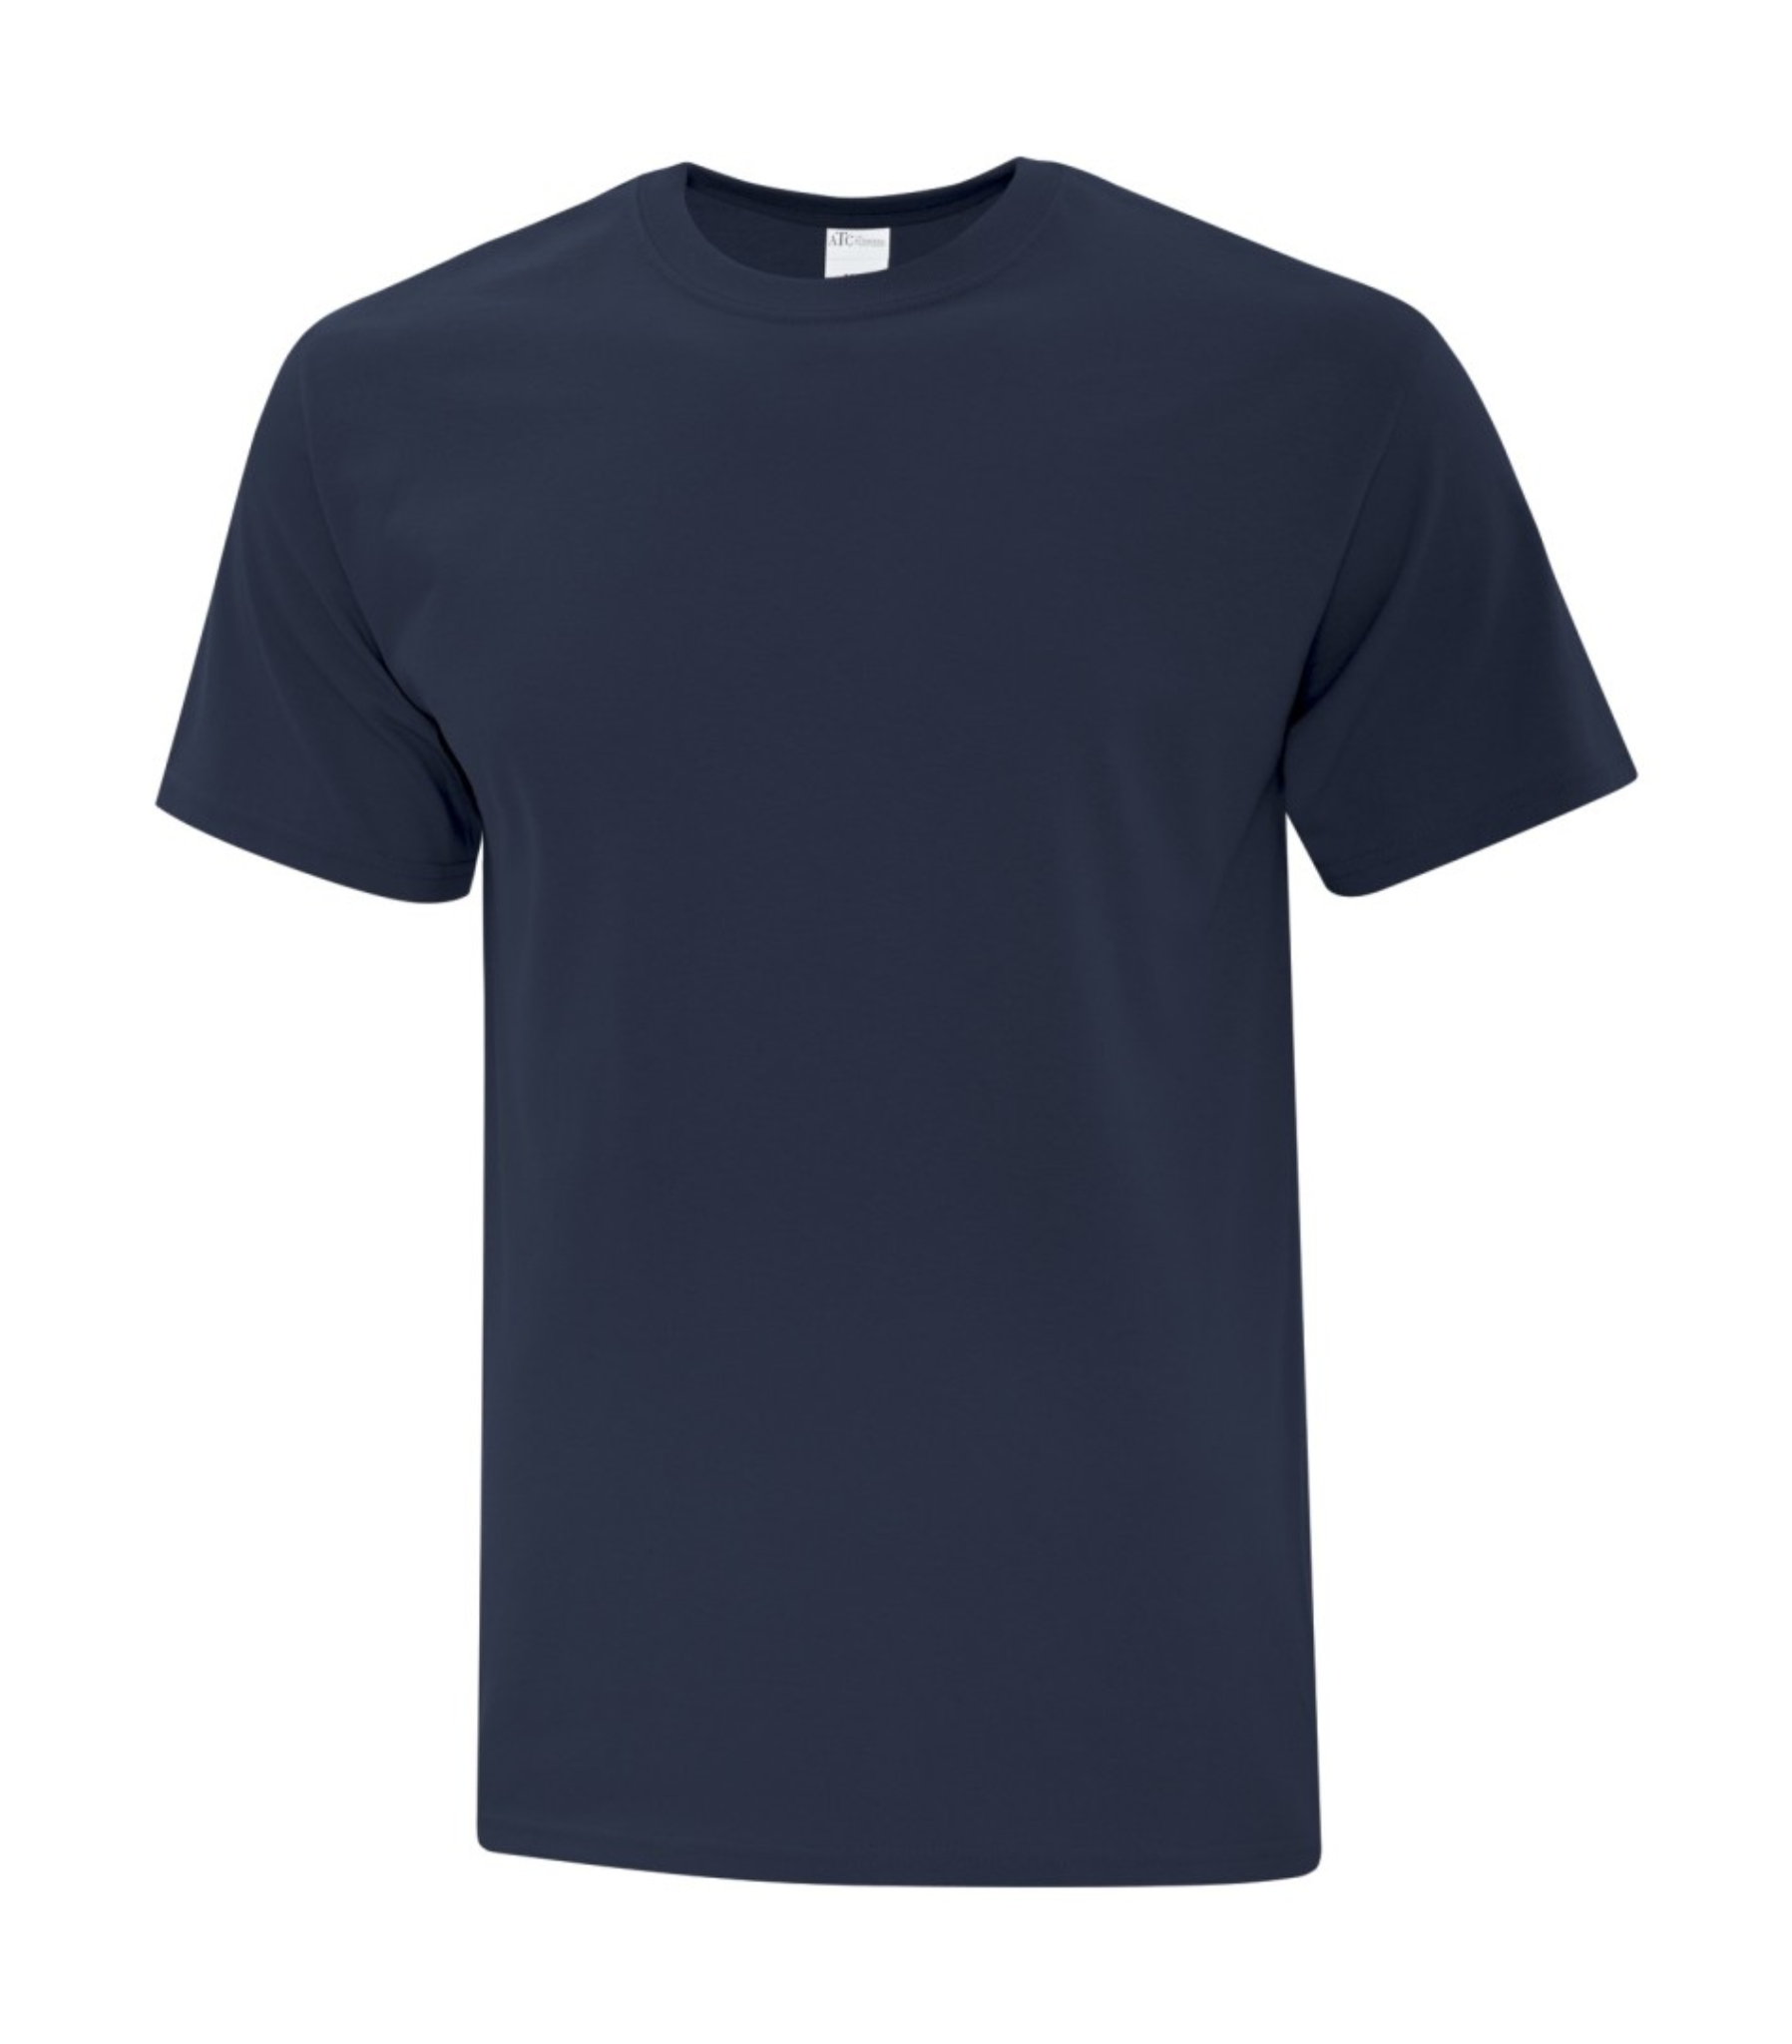 Mens T-Shirt - Cotton - ATC 1000